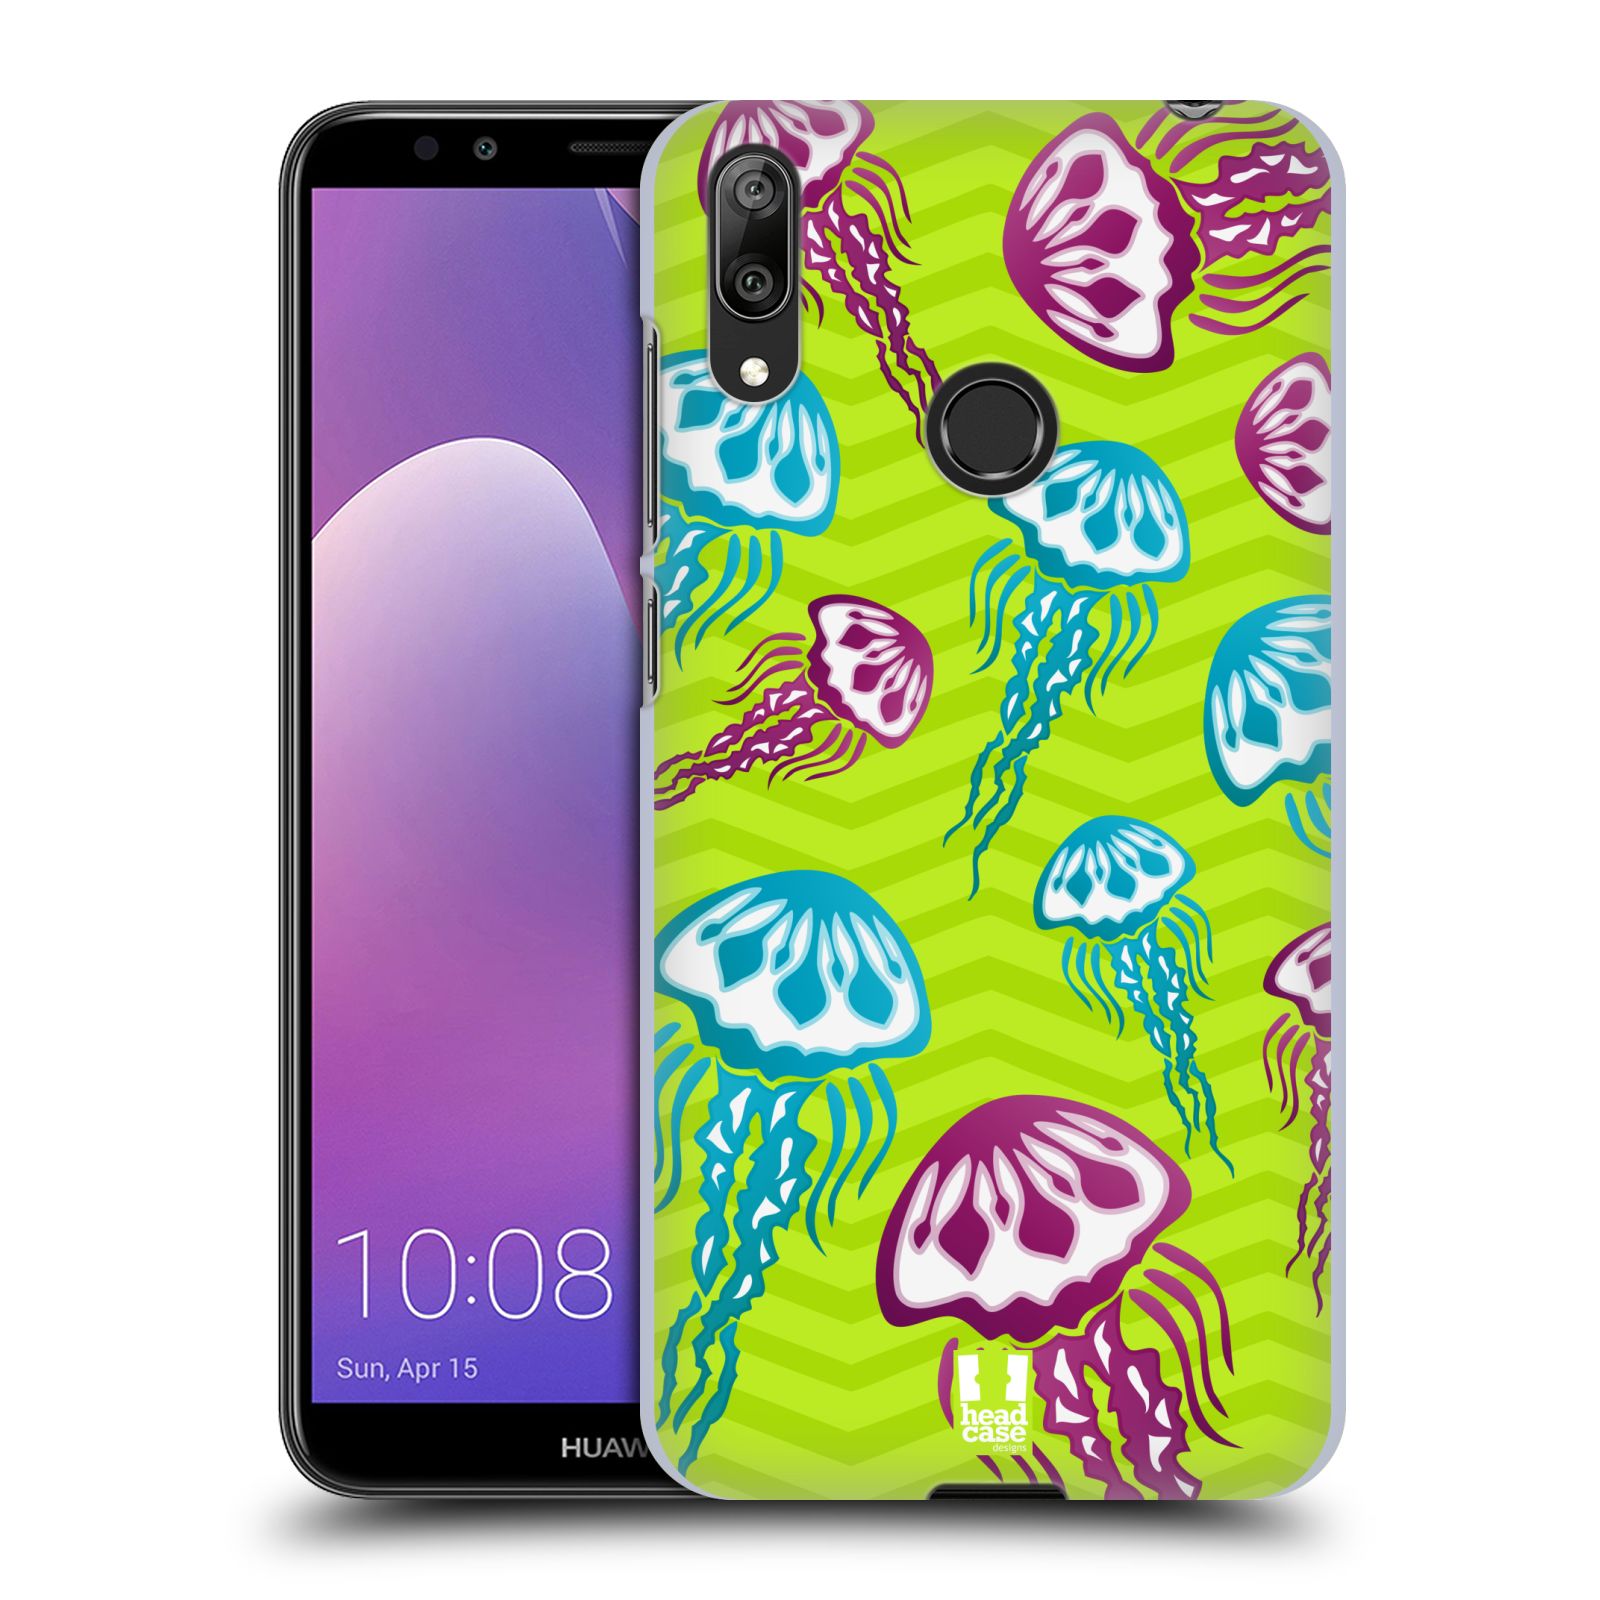 Pouzdro na mobil Huawei Y7 2019 - Head Case - vzor mořský živočich medůza